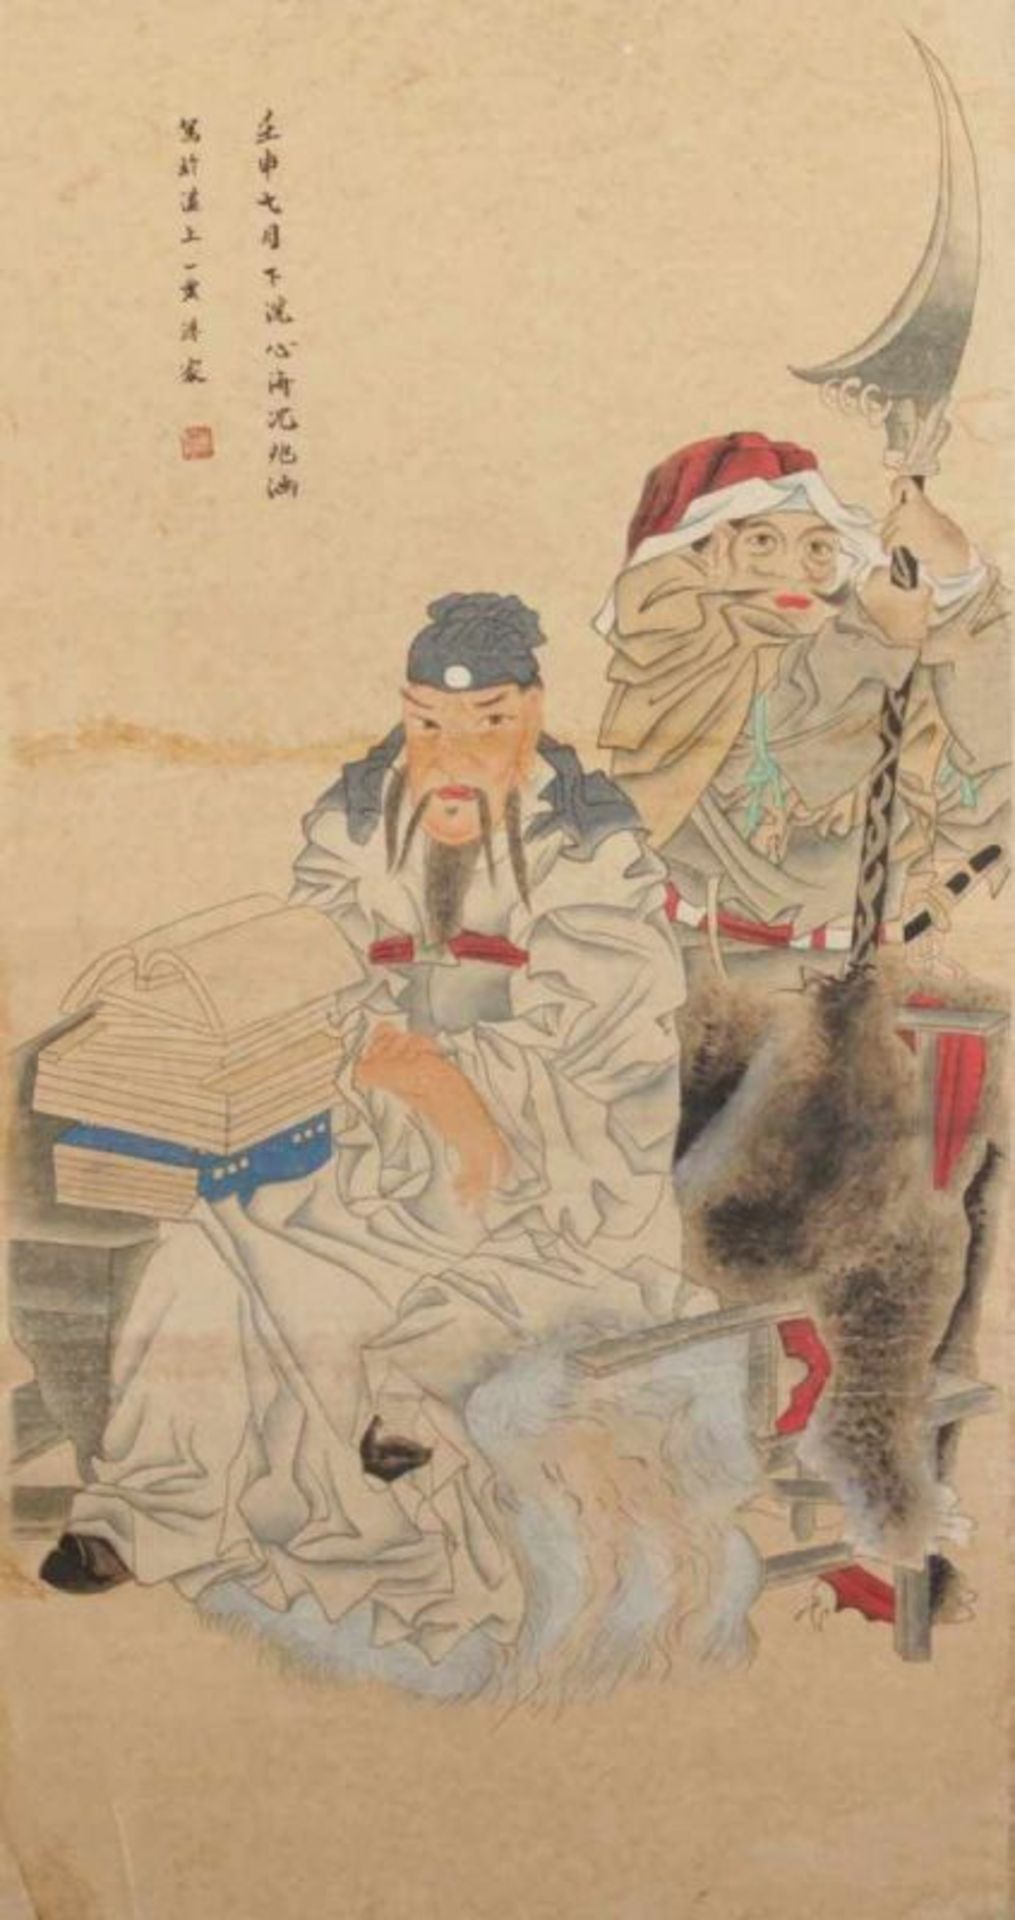 ROLLBILD, Tusche und Farben auf Papier, zwei Gottheiten, in der Art von SHEN ZHAOHAN (1855-1941),